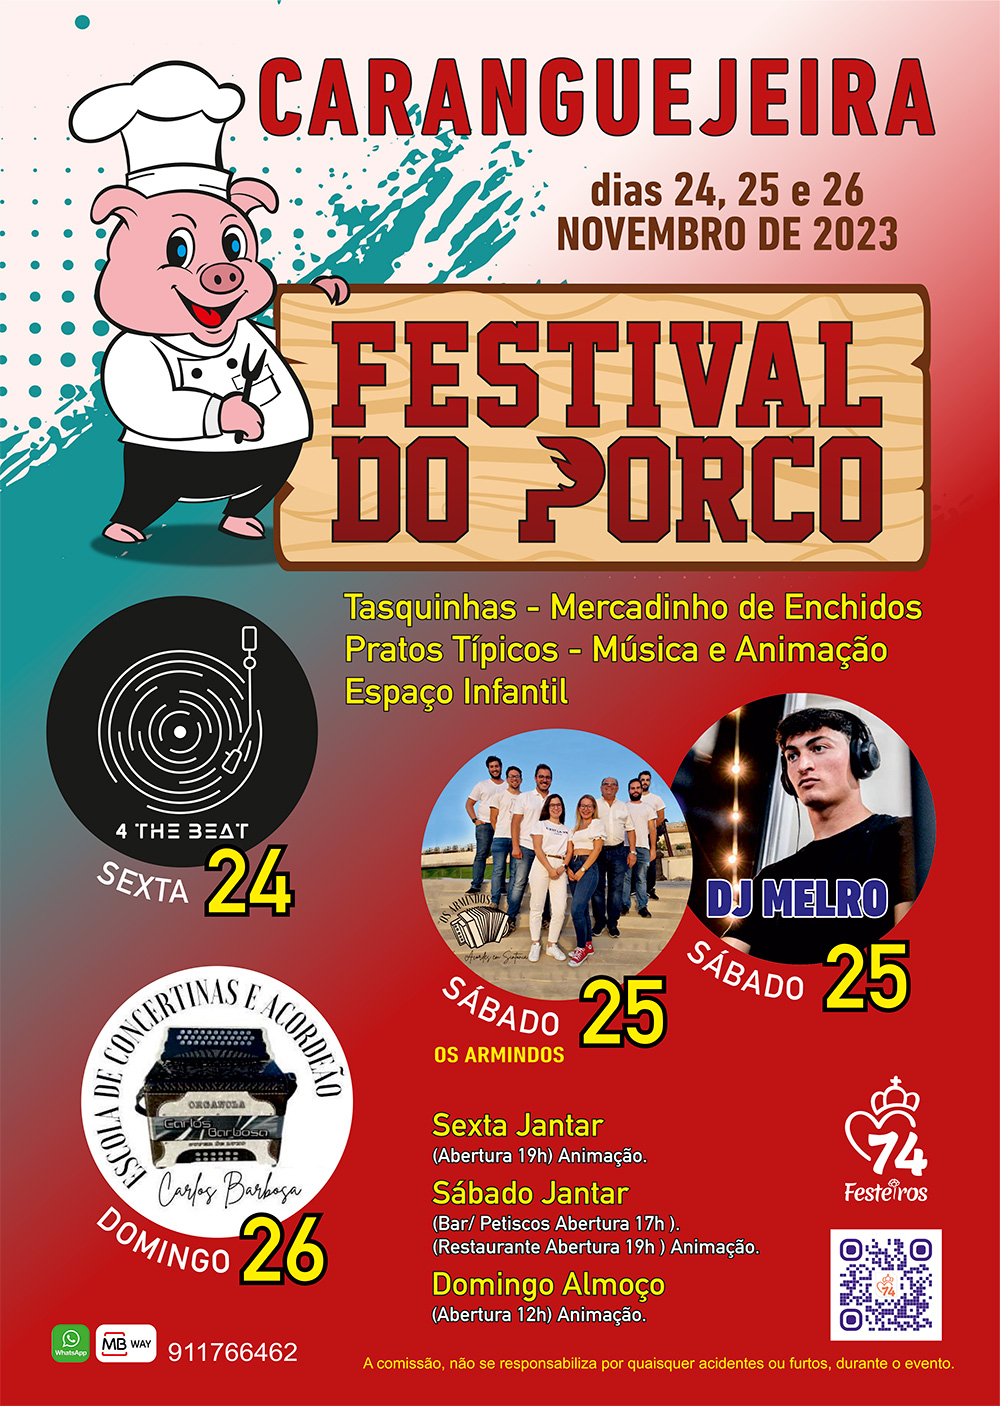 Porco rosso - 2023 calendário de outubro em 2023